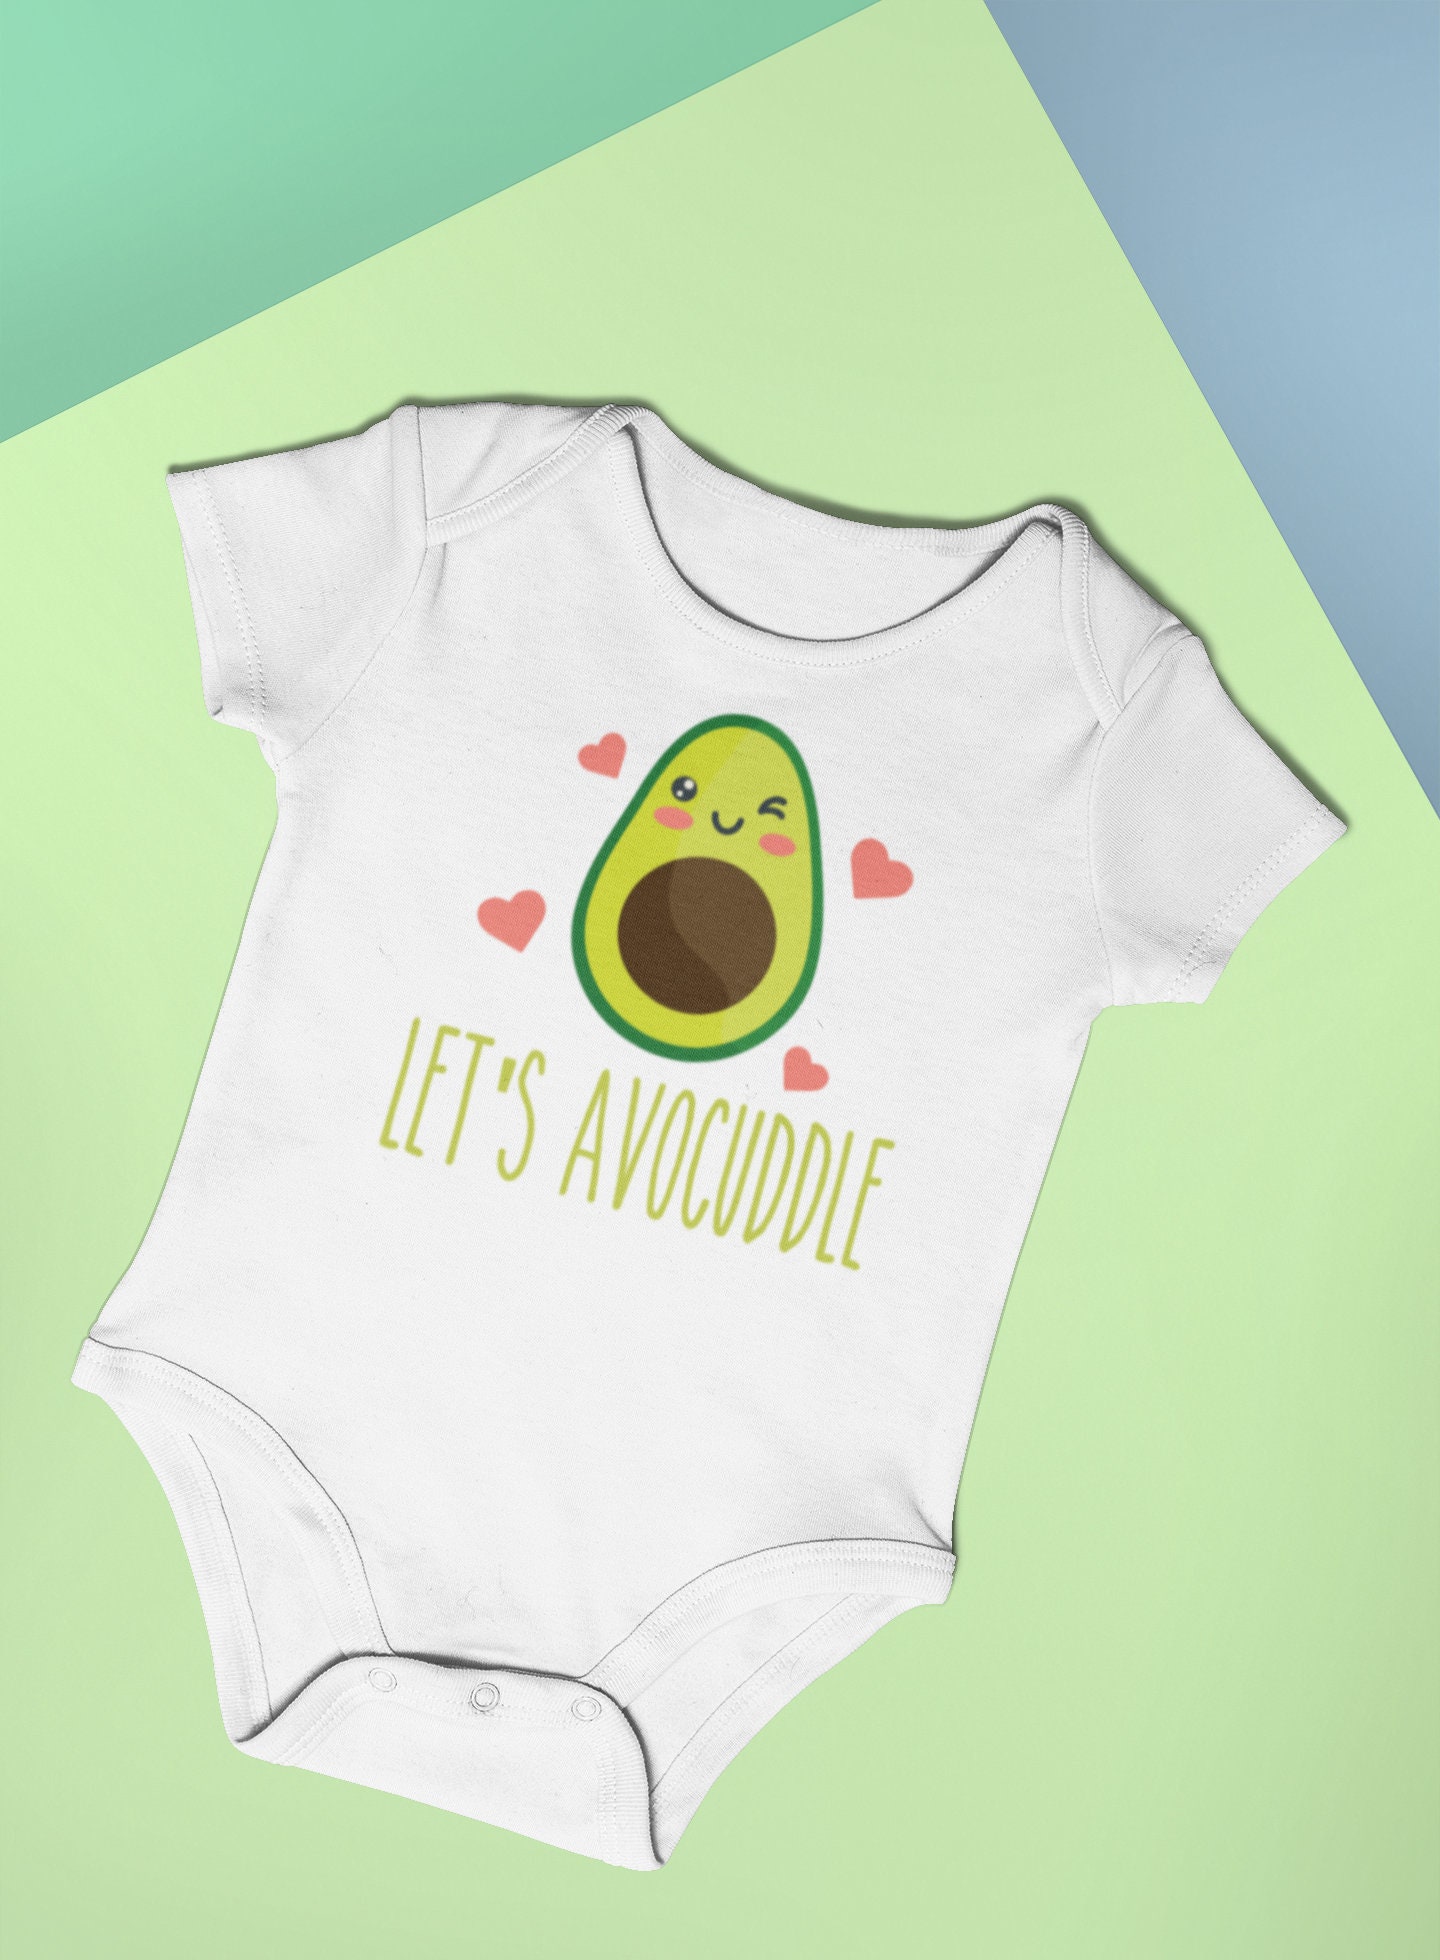 Avocado Baby Bodysuit Let's Avocuddle Avocado Baby | Etsy UK